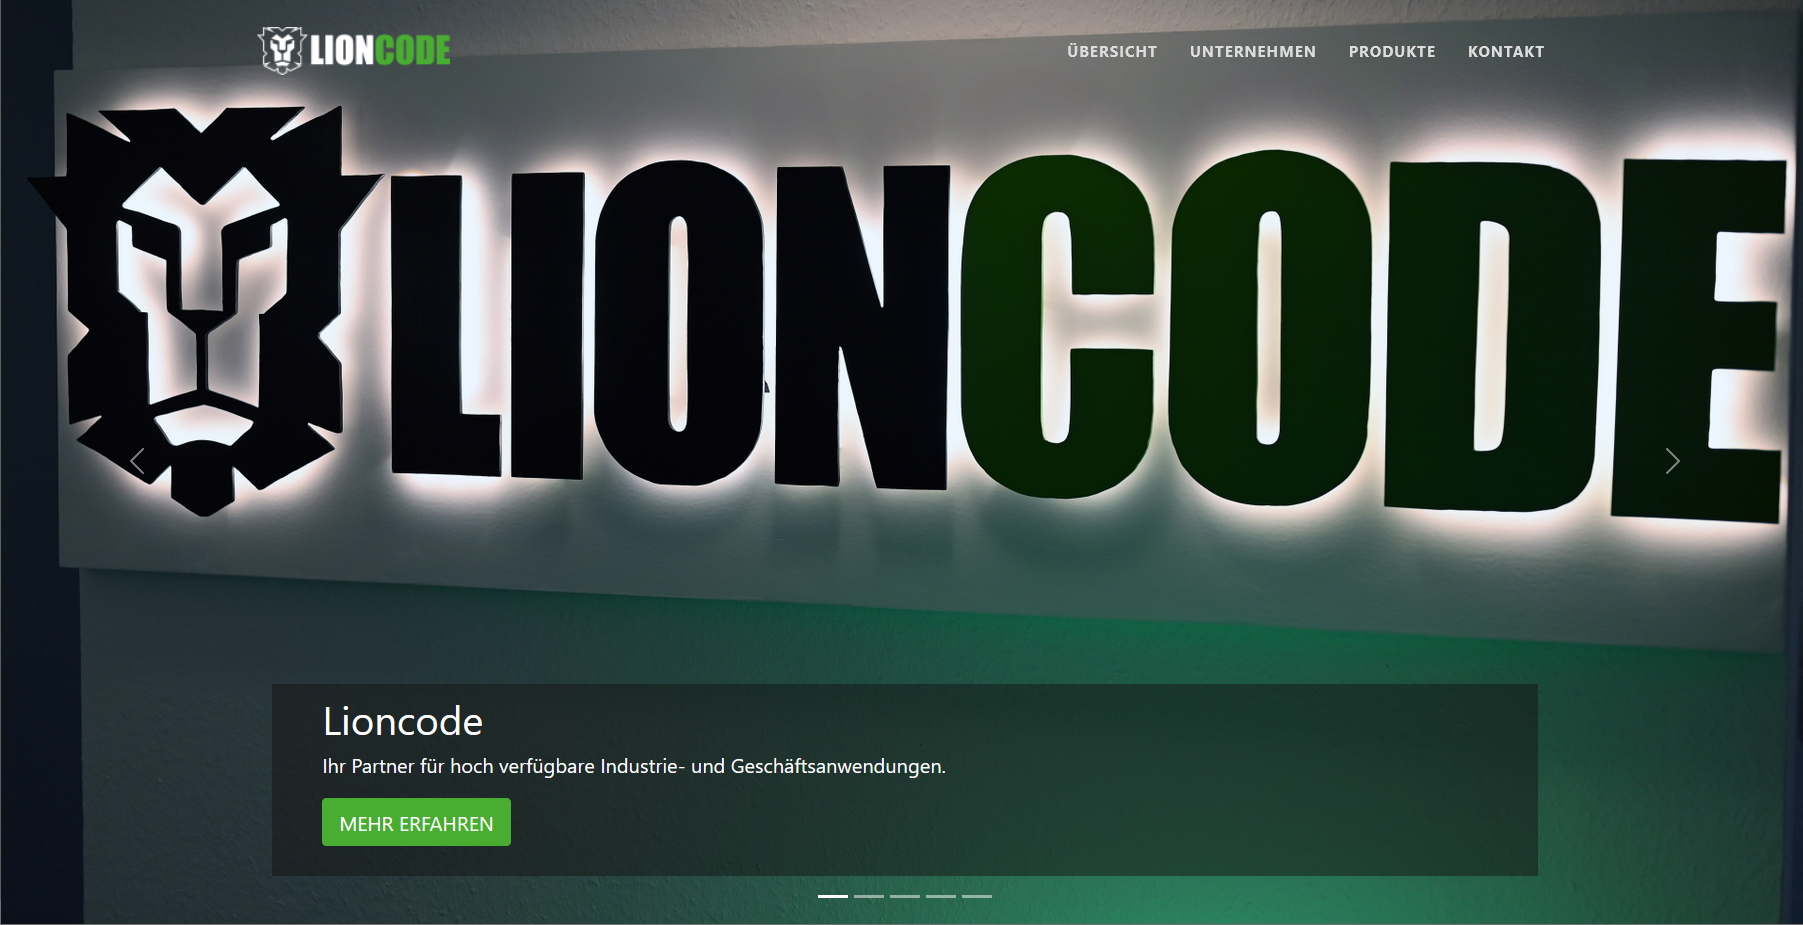 Bild von der neuen Lioncode Homepage